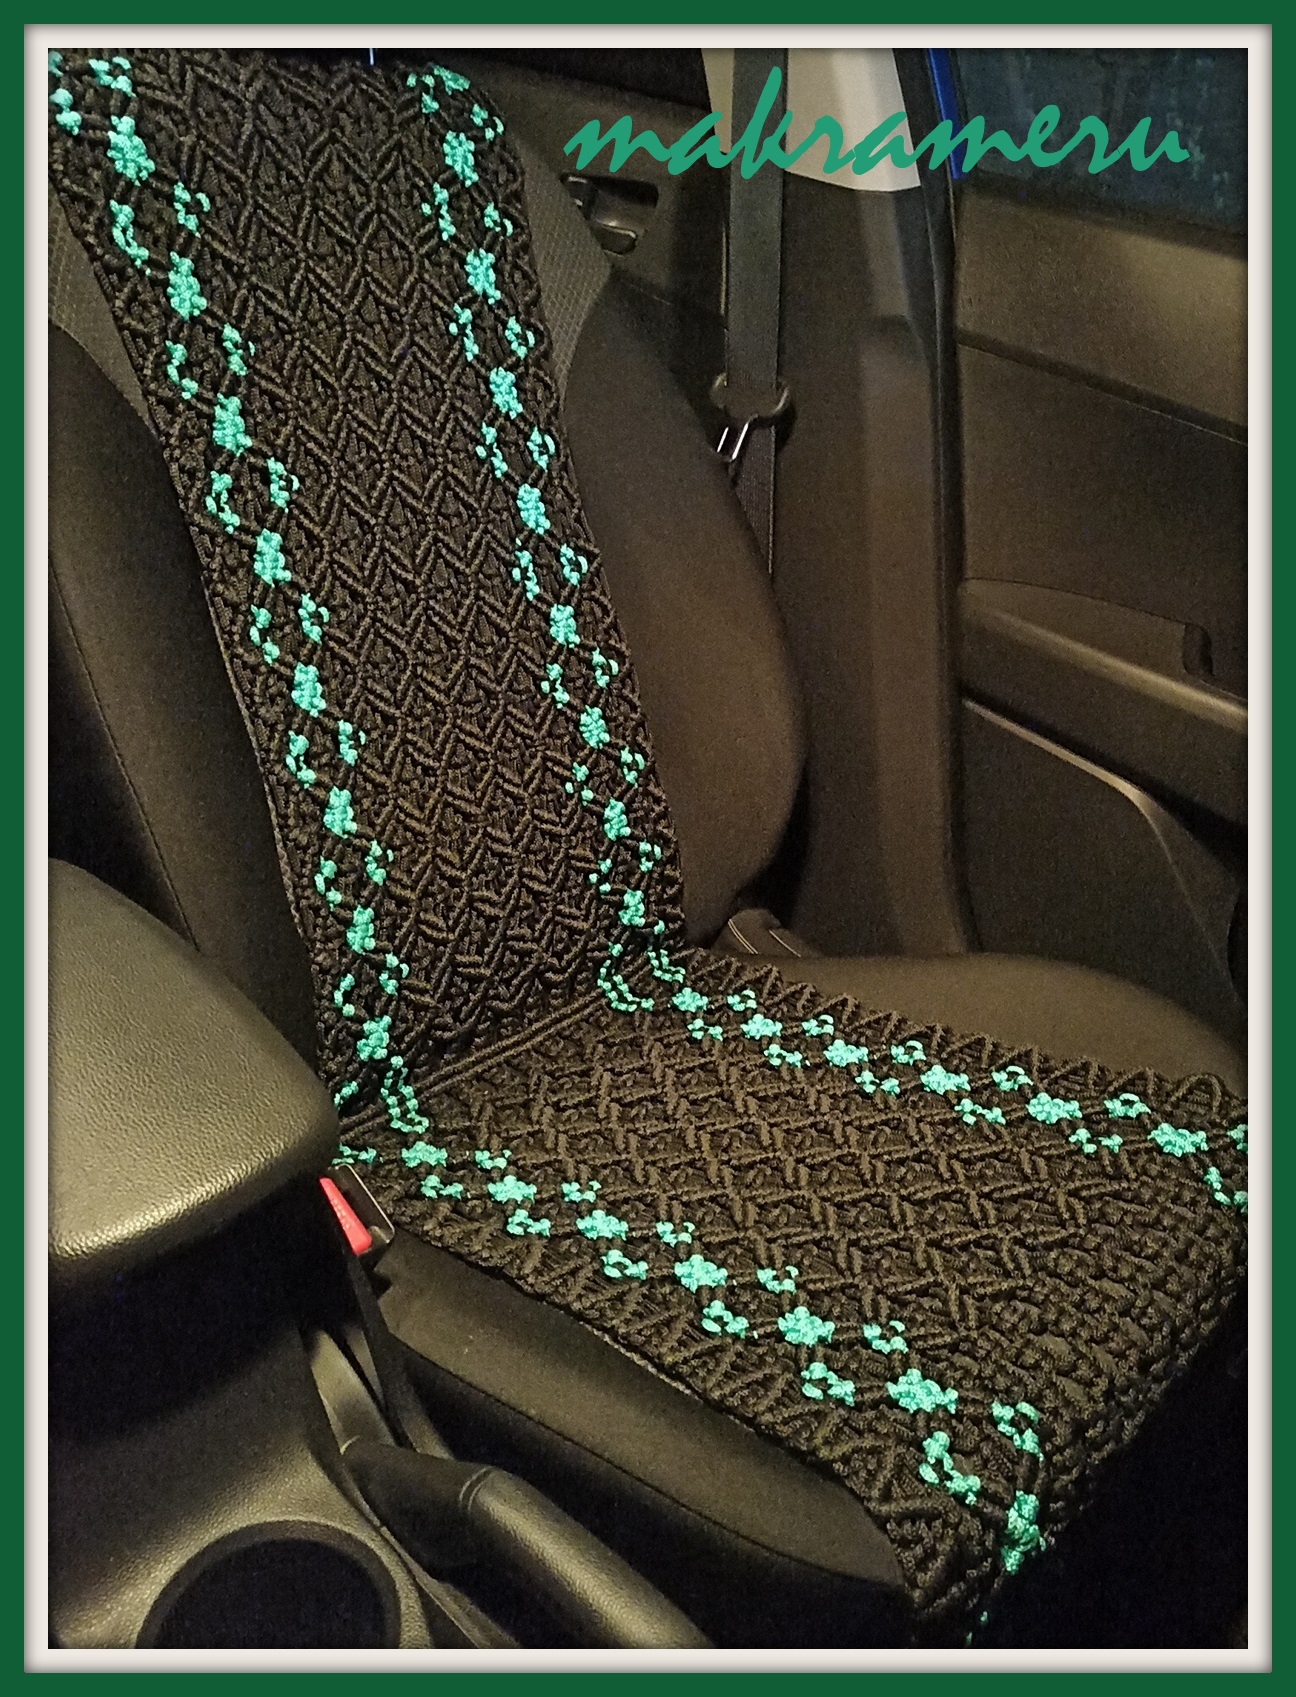 Оригинальный подарок водителю - черные накидки с зеленым узором